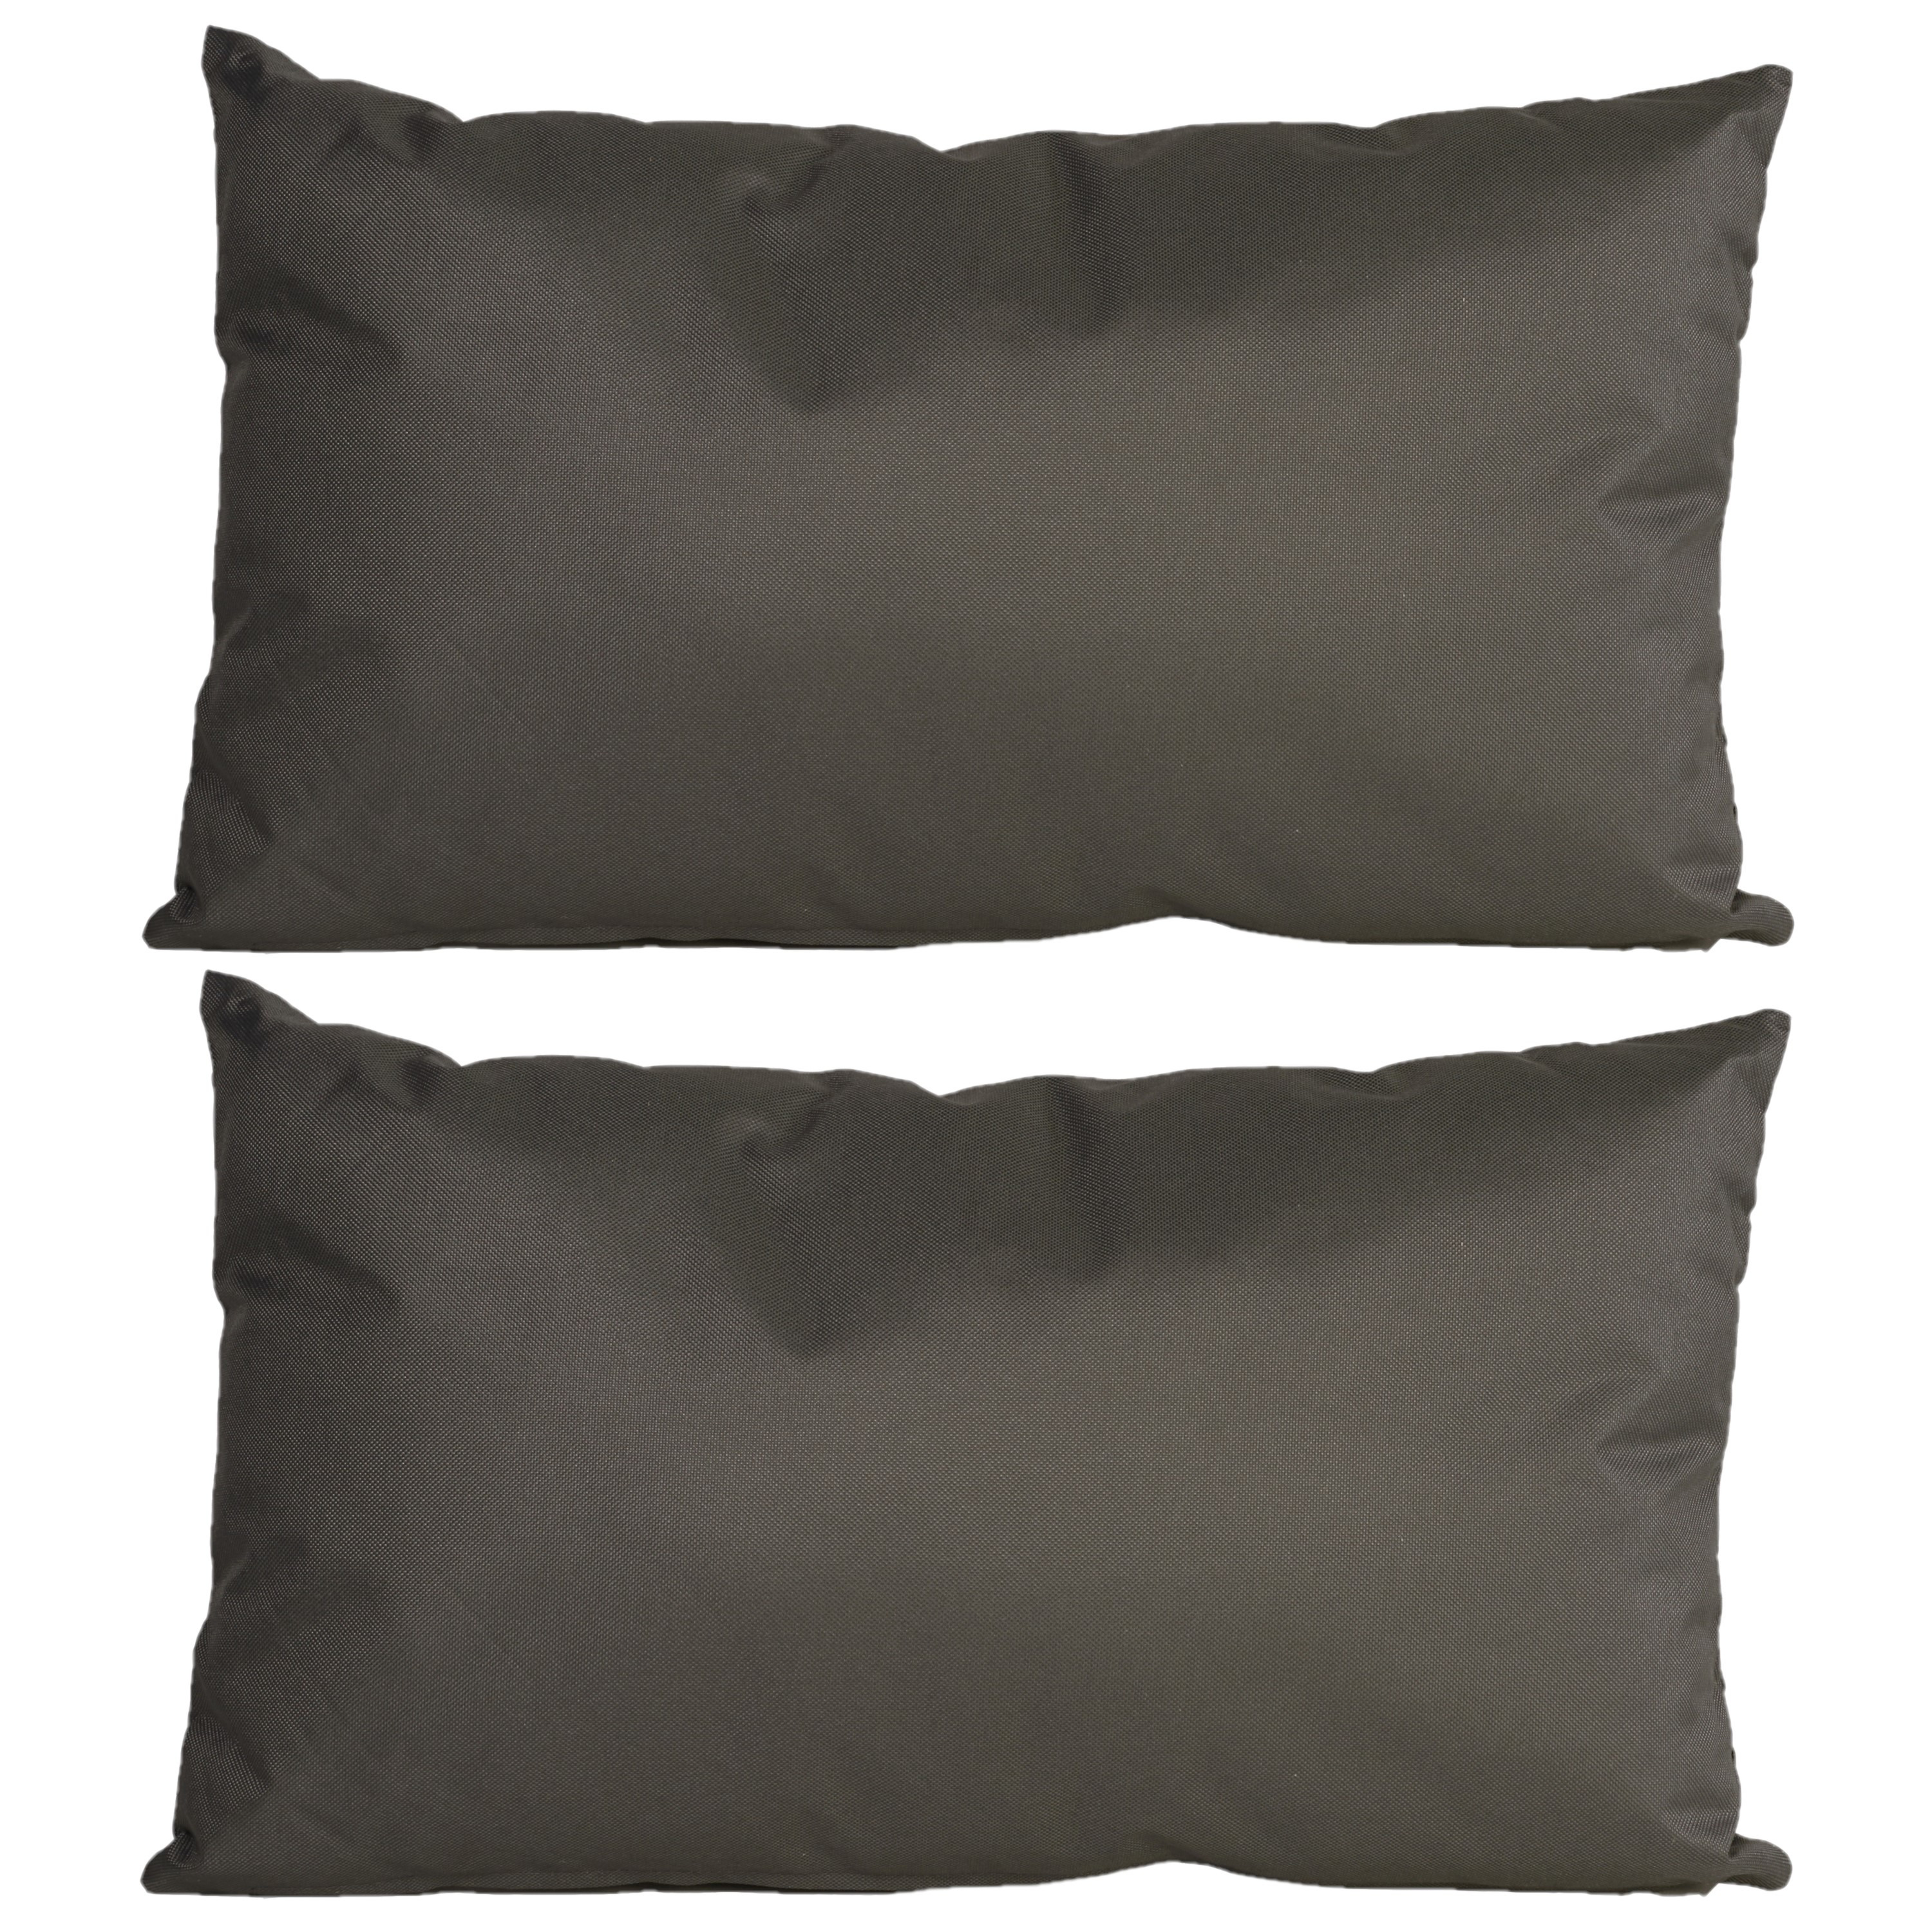 6x Bank-sier kussens voor binnen en buiten in de kleur antraciet grijs 30 x 50 cm